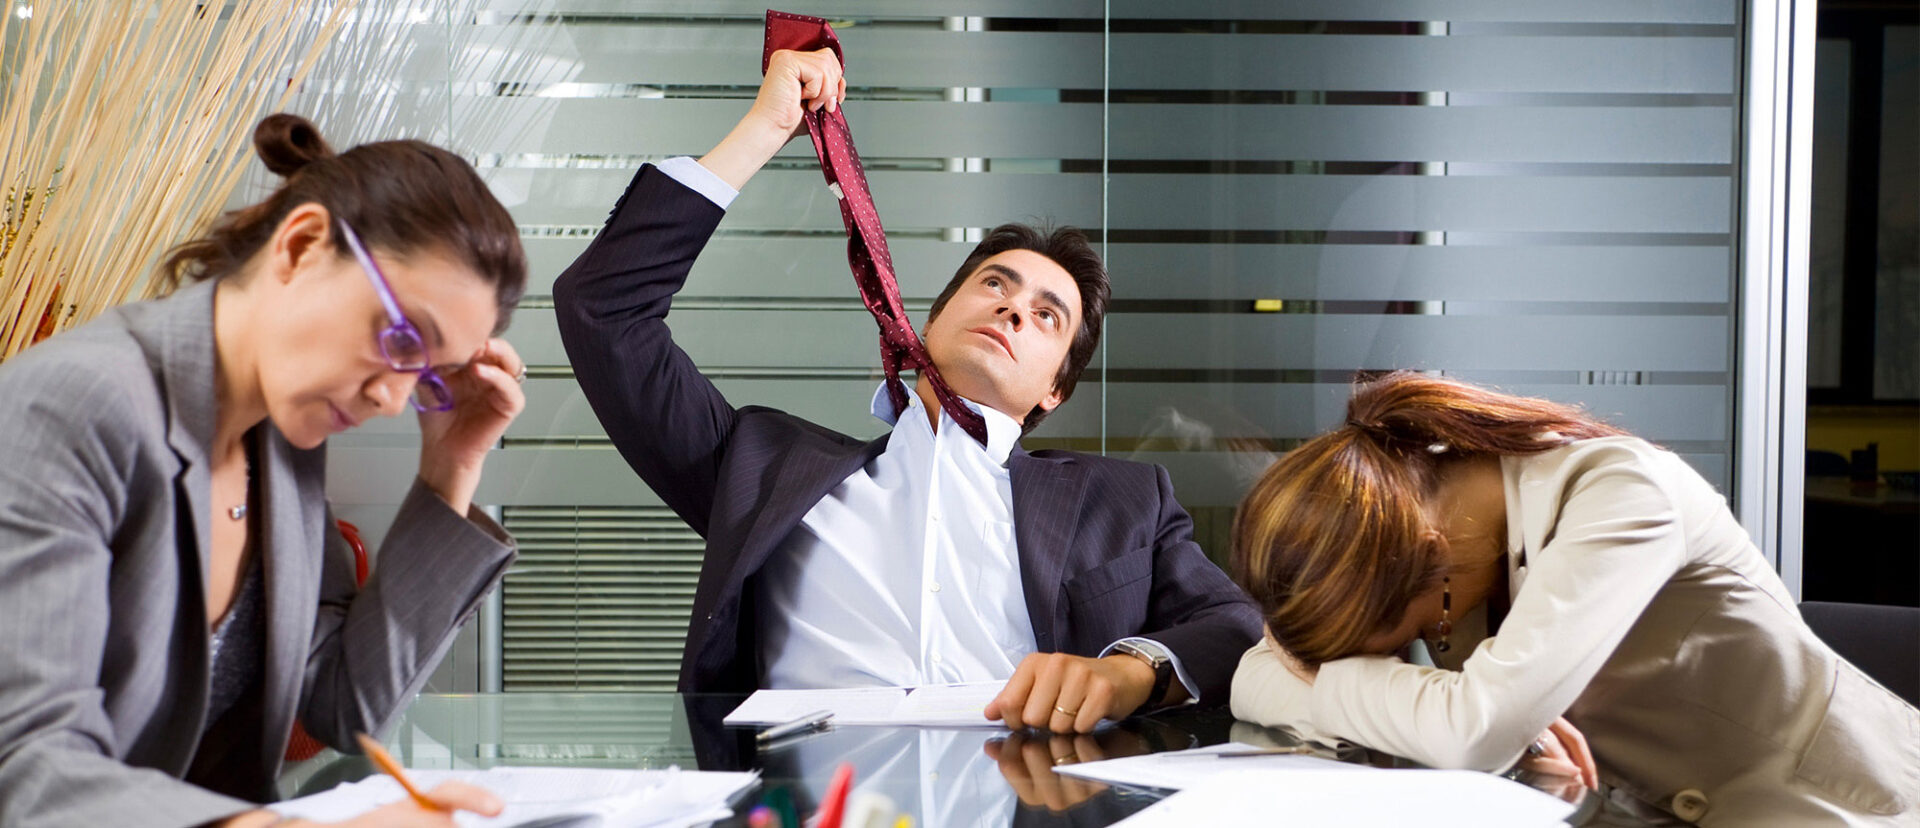 Frustração profissional: como lidar com a frustração no trabalho?